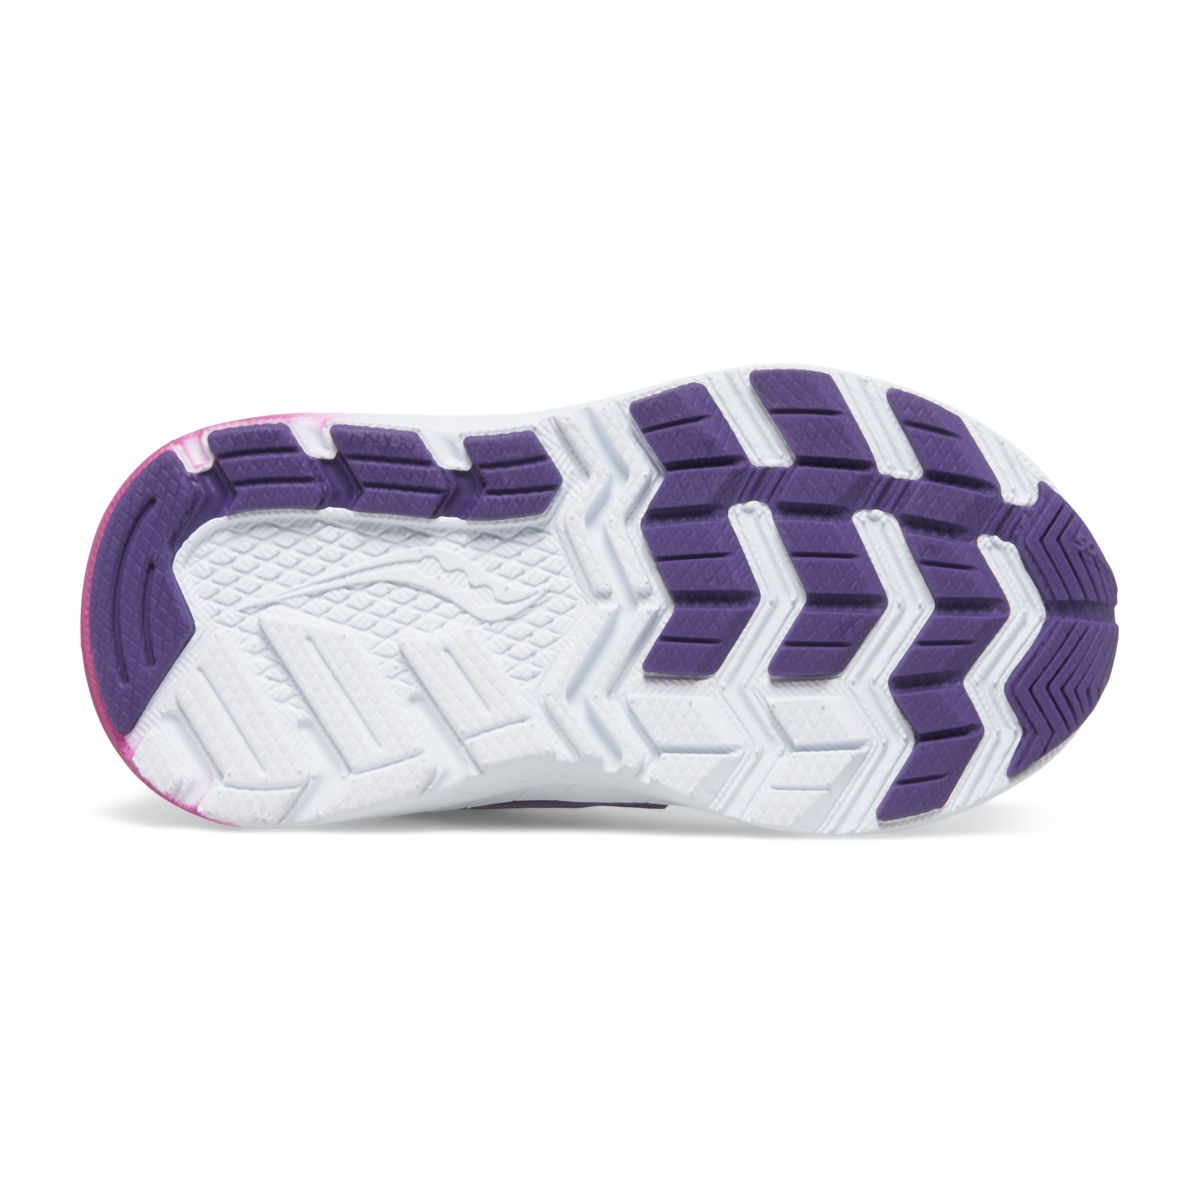 Flash 3.0 A/C Jr. Sneaker, Teal | Purple | Chrome, dynamic 4